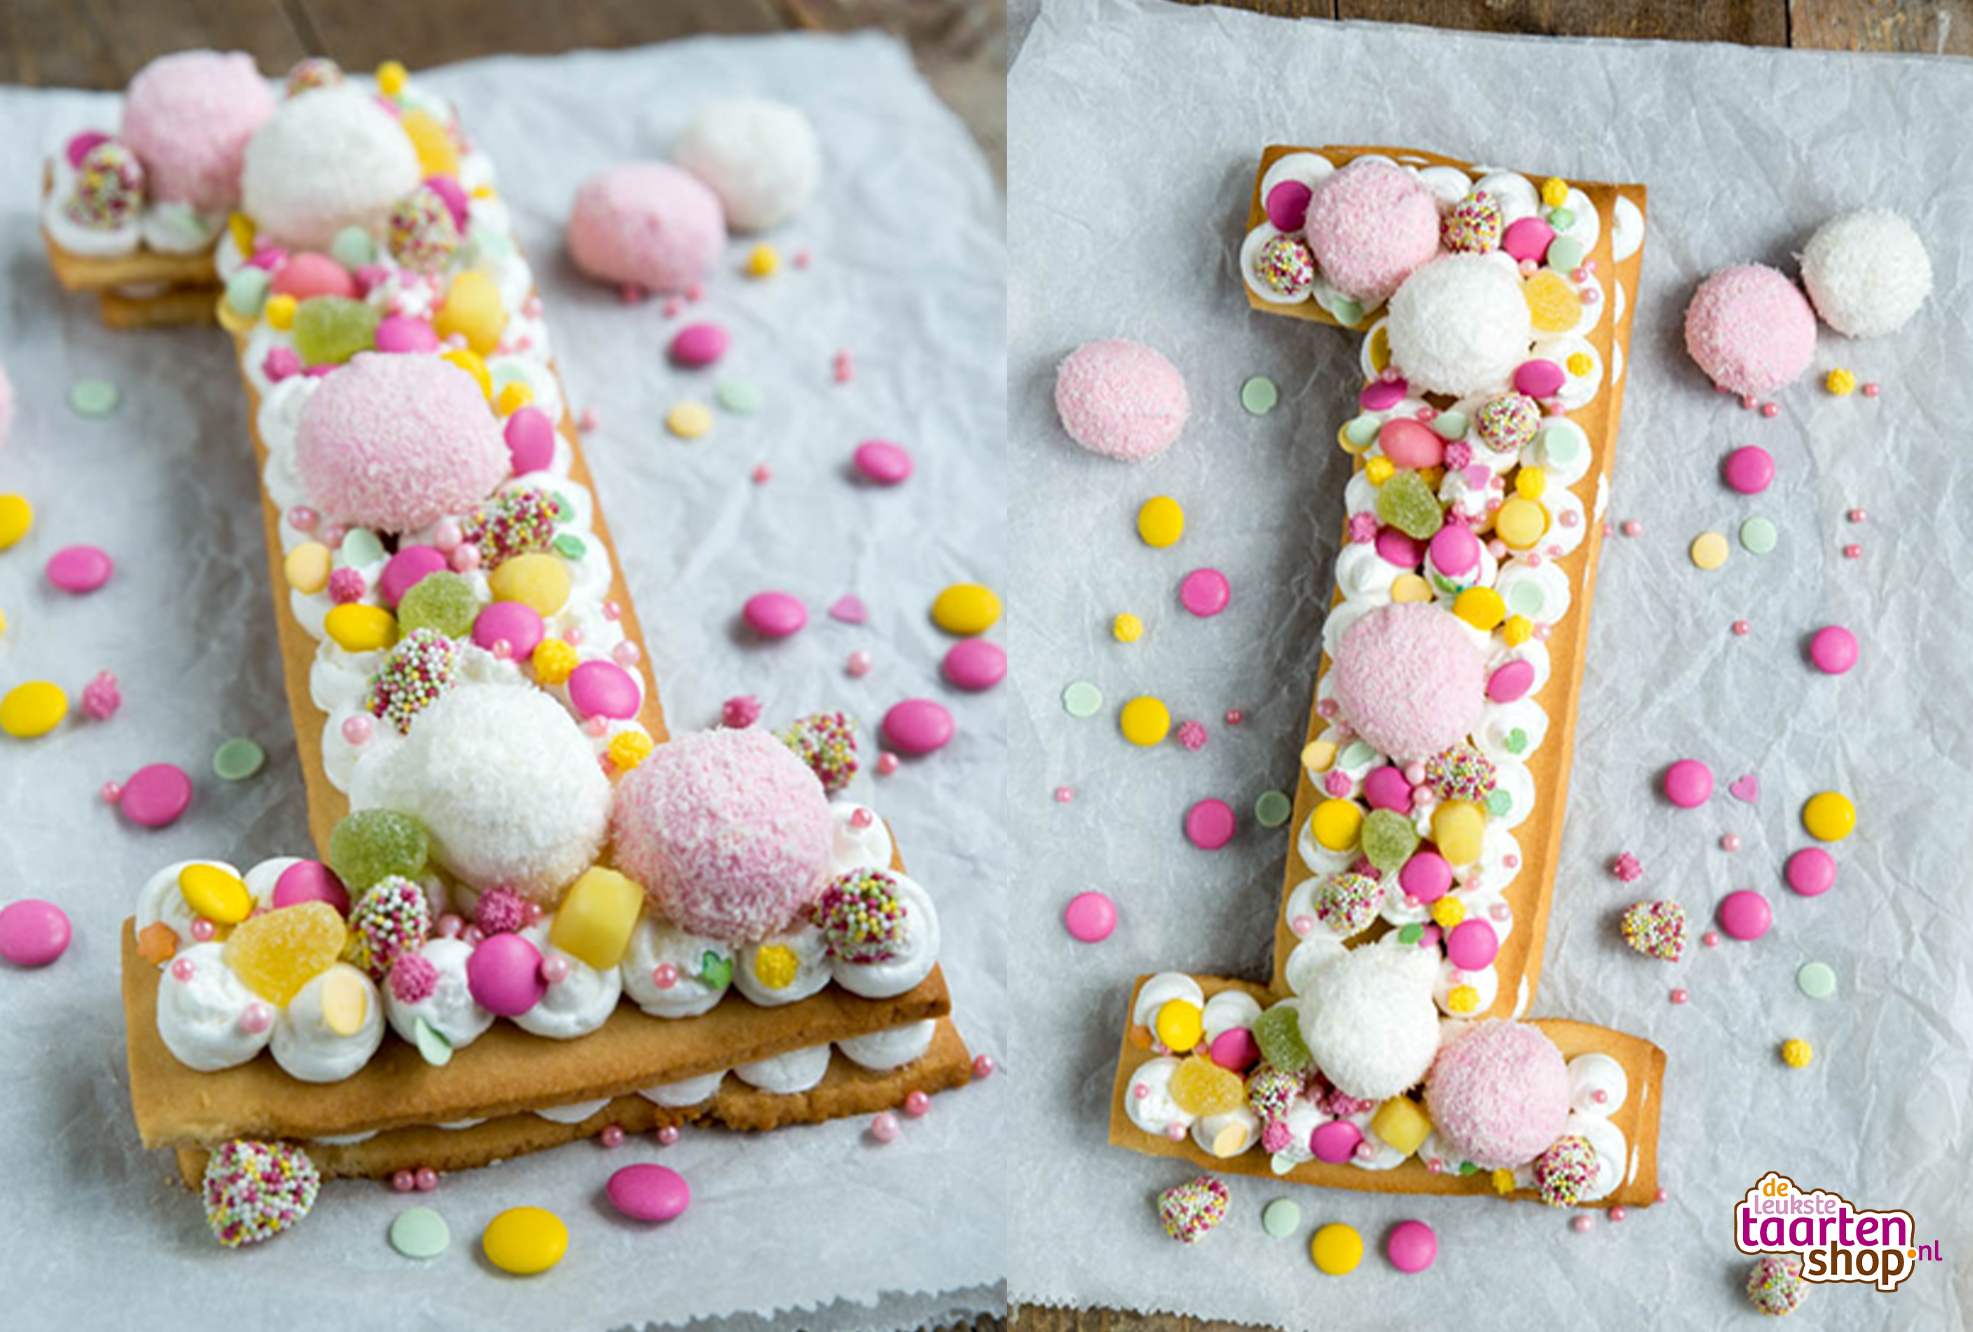 Verschuiving B.C. Weg Cake Smash Cookie cake met snoepjes brenda kookt | Deleukstetaartenshop.nl